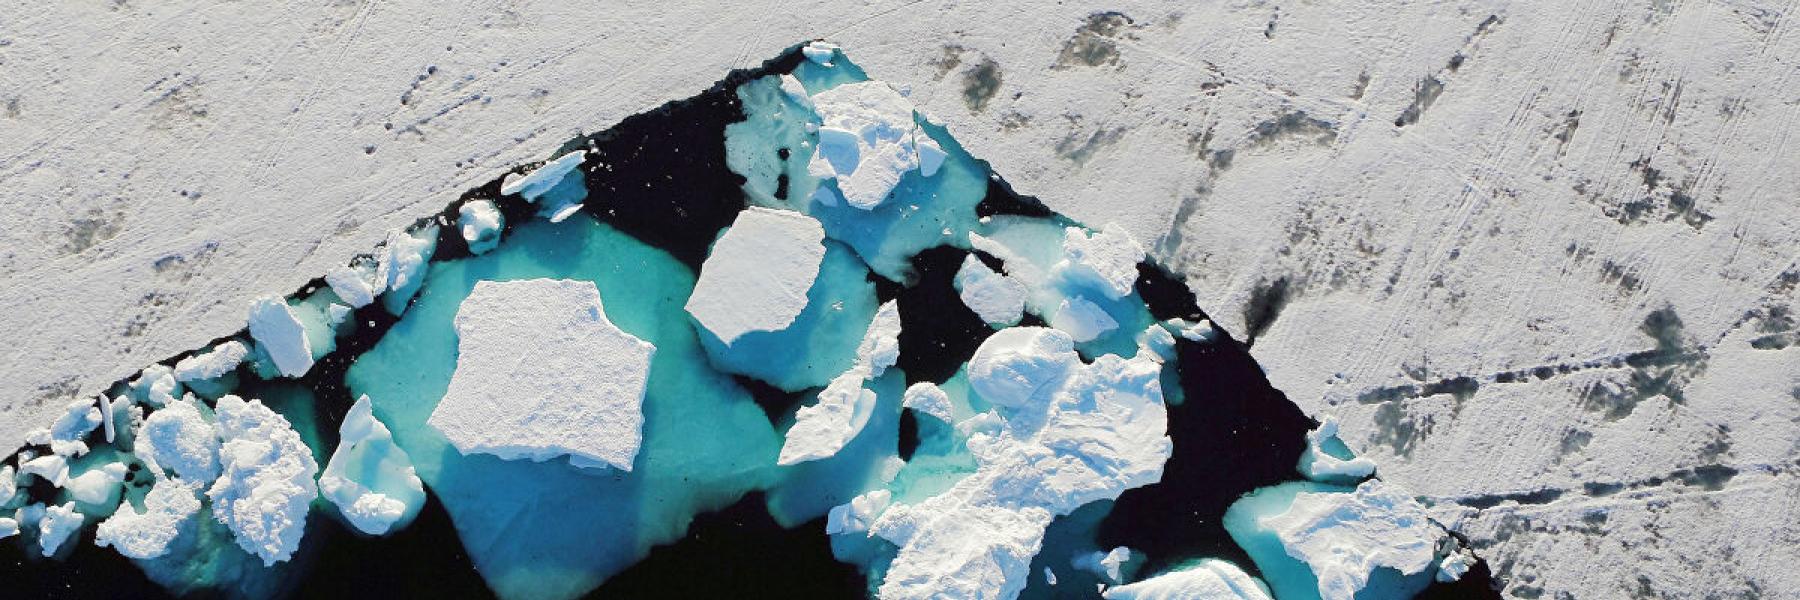 تغير المناخ يخلق ألف بحيرة جديدة في جزء الألب مع ذوبان الجليد